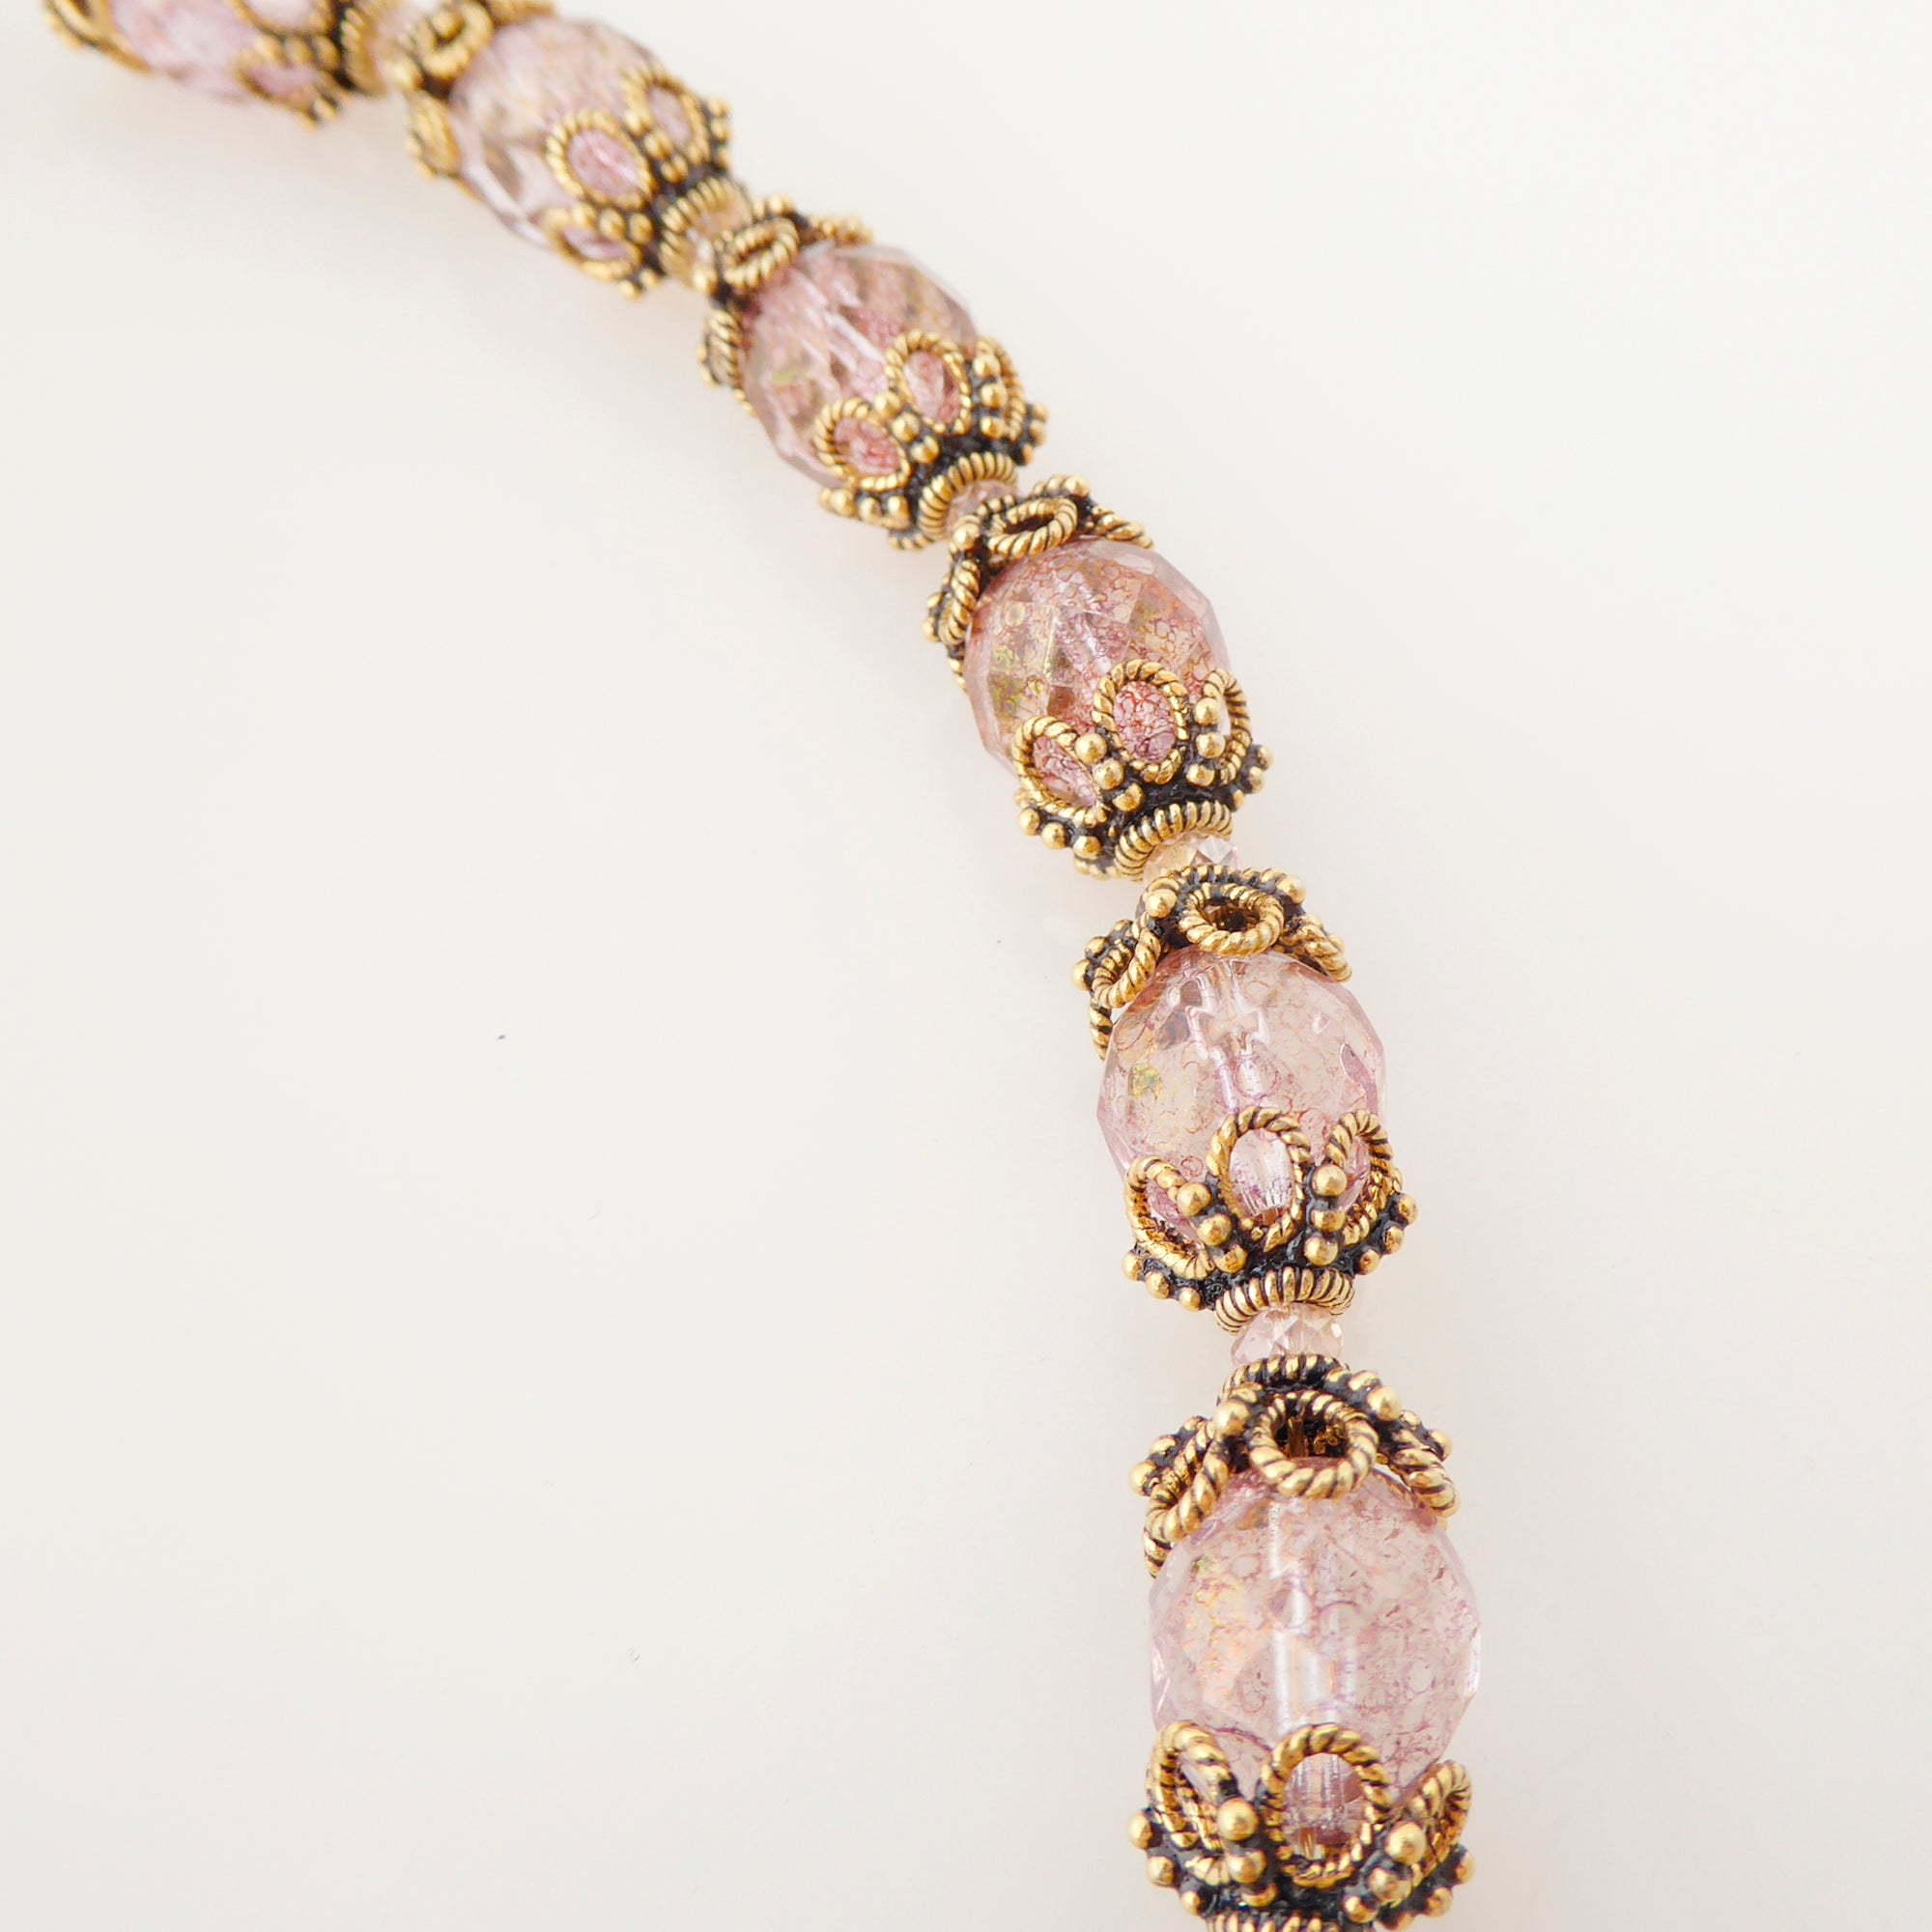 Greige quartz rococo necklace by Jenny Dayco 5